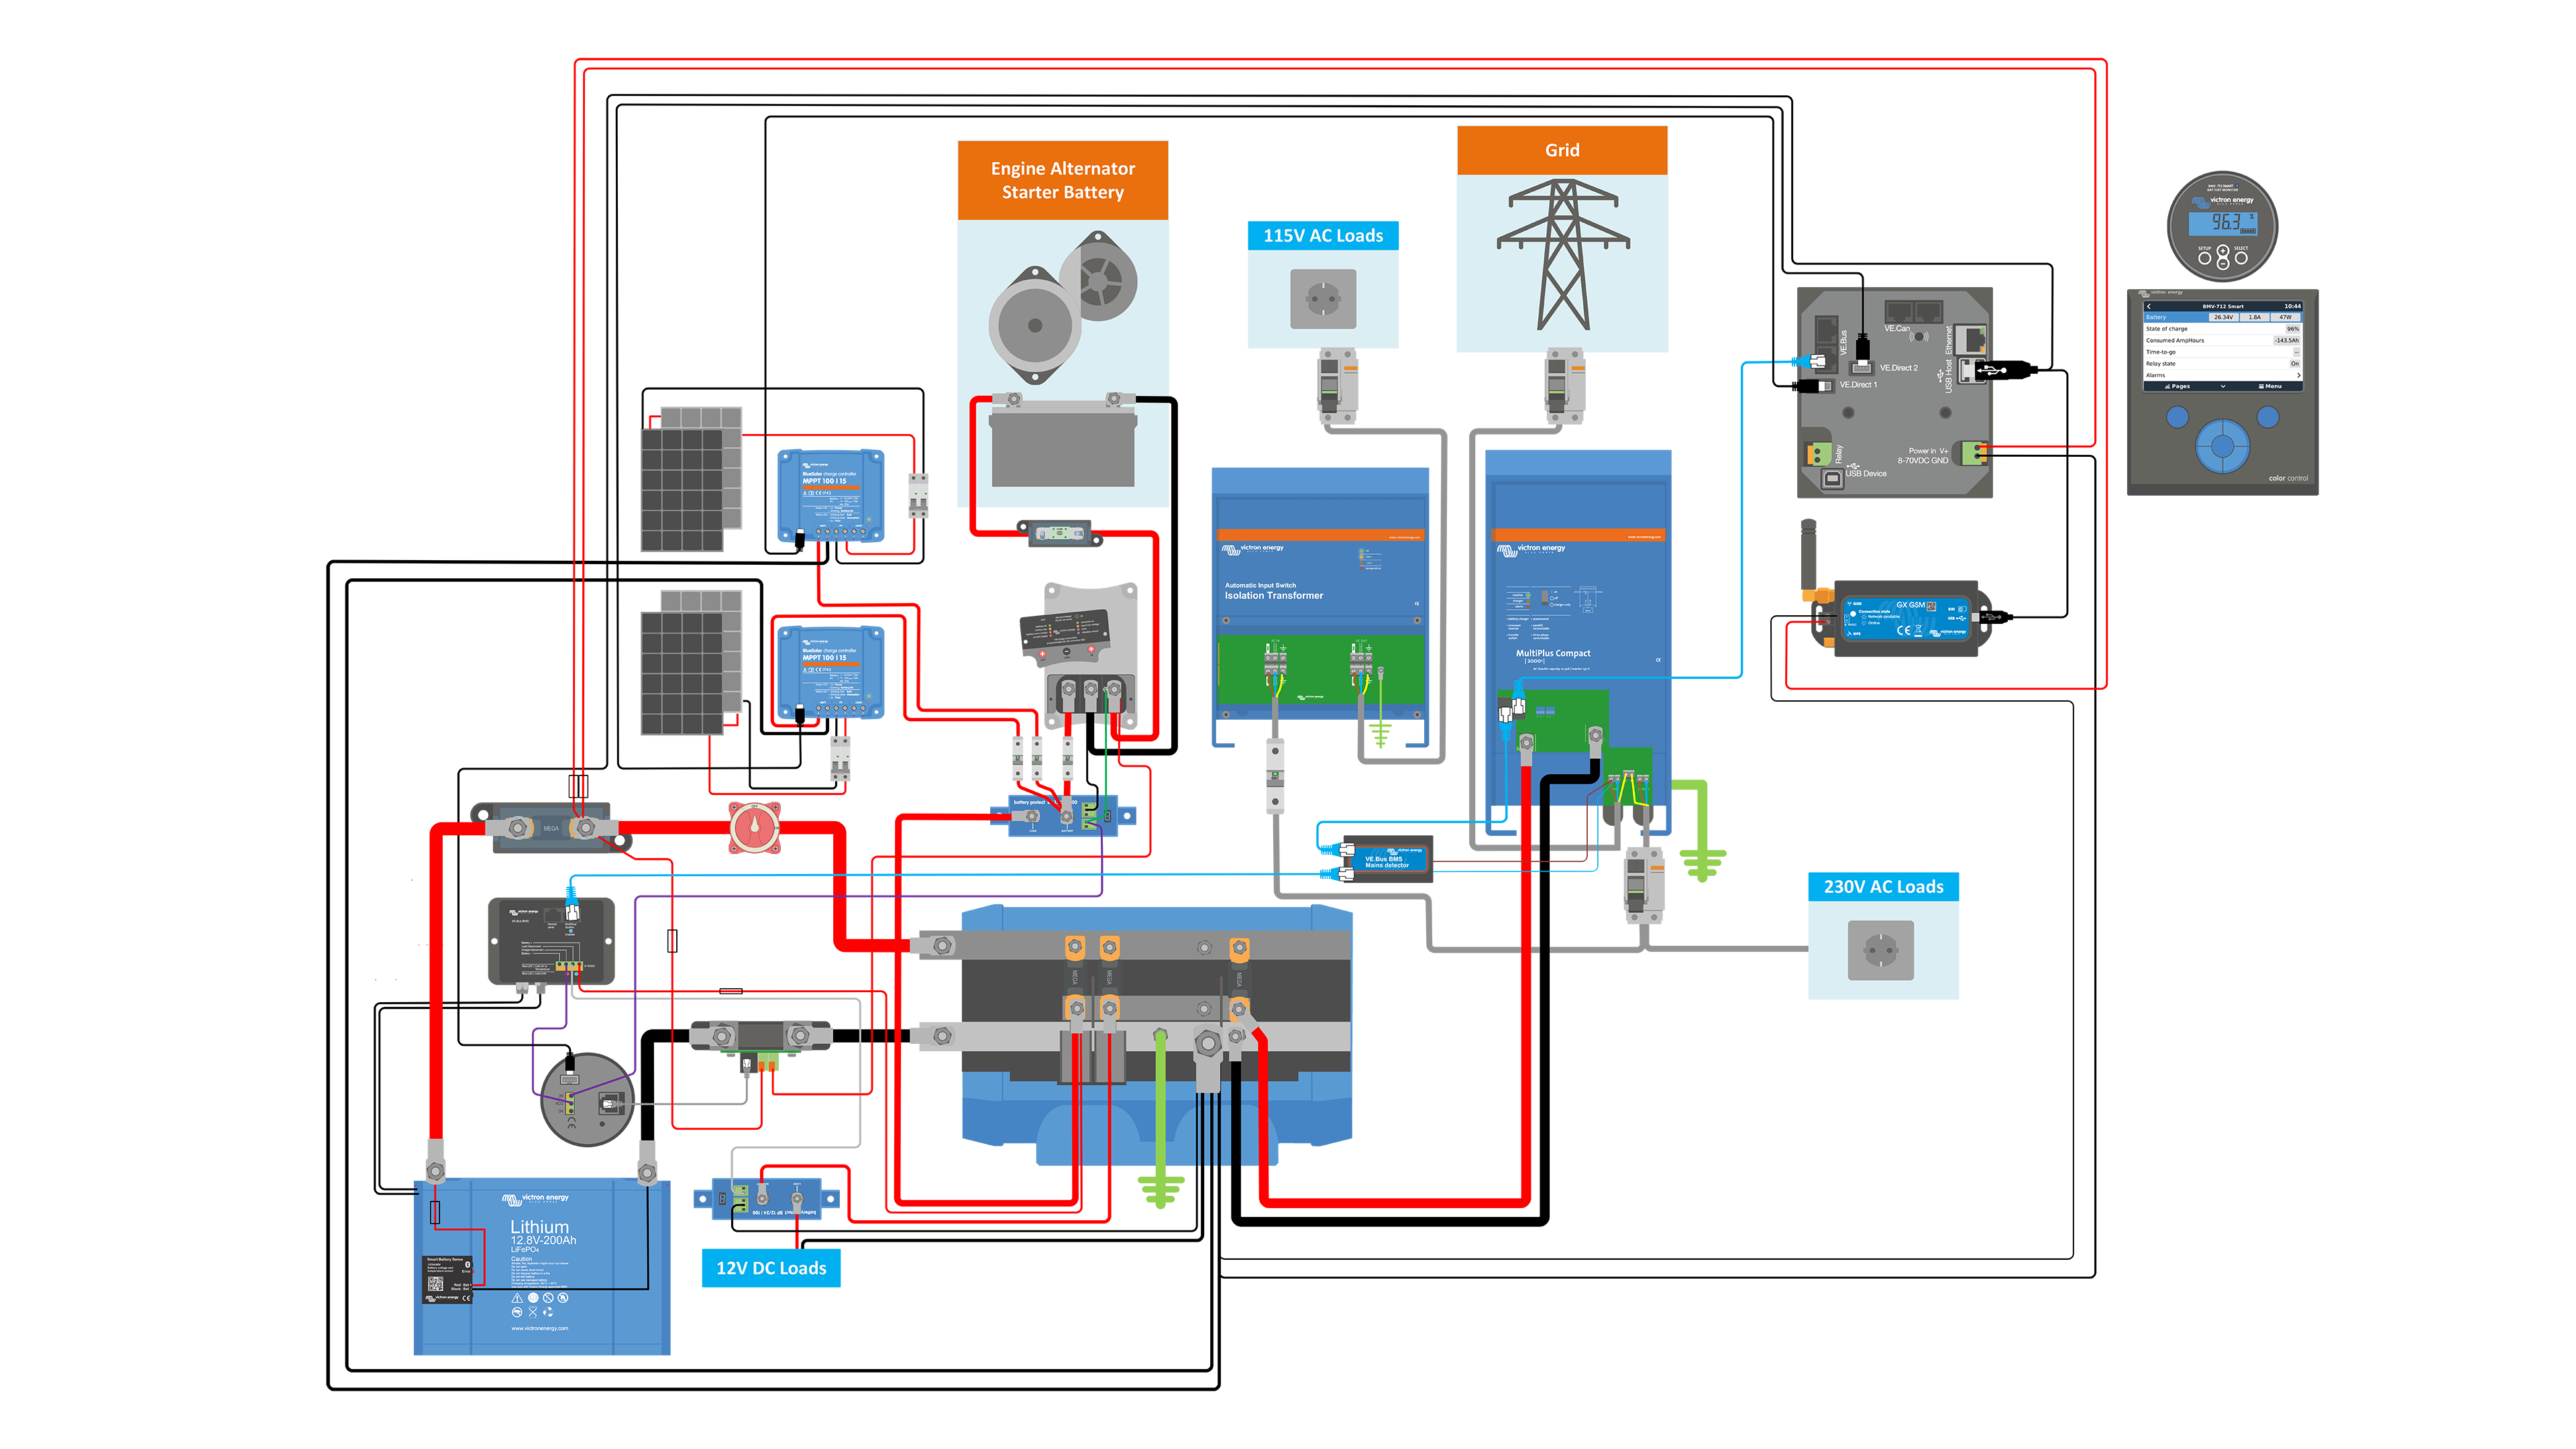 victron bmv 712 wiring diagram